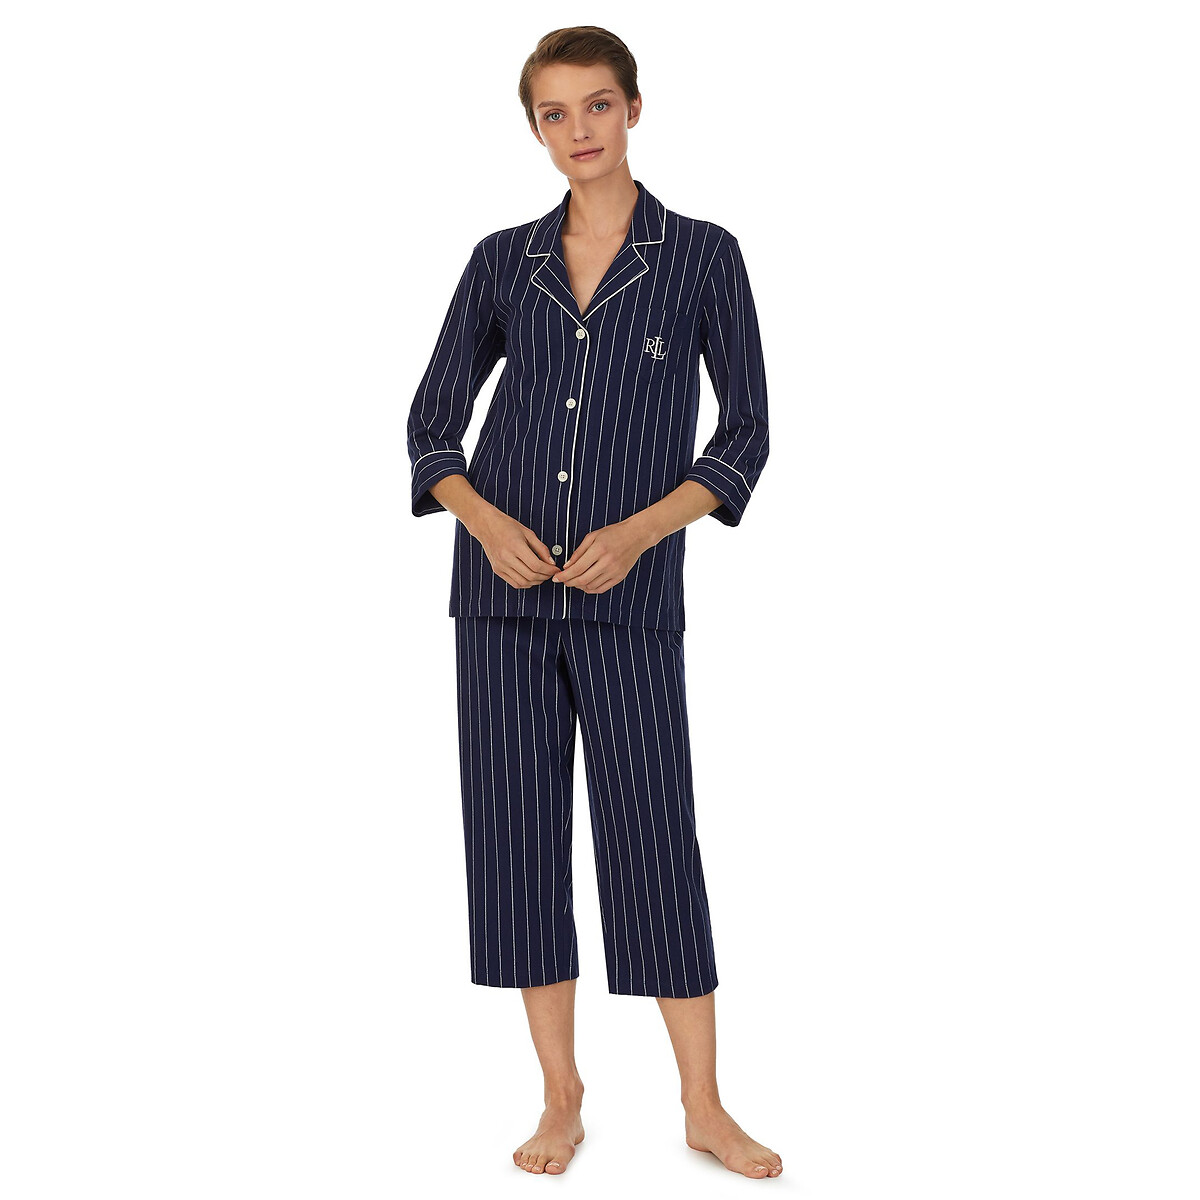 Пижама Длинная из хлопка в полоску с рукавами 34 M синий